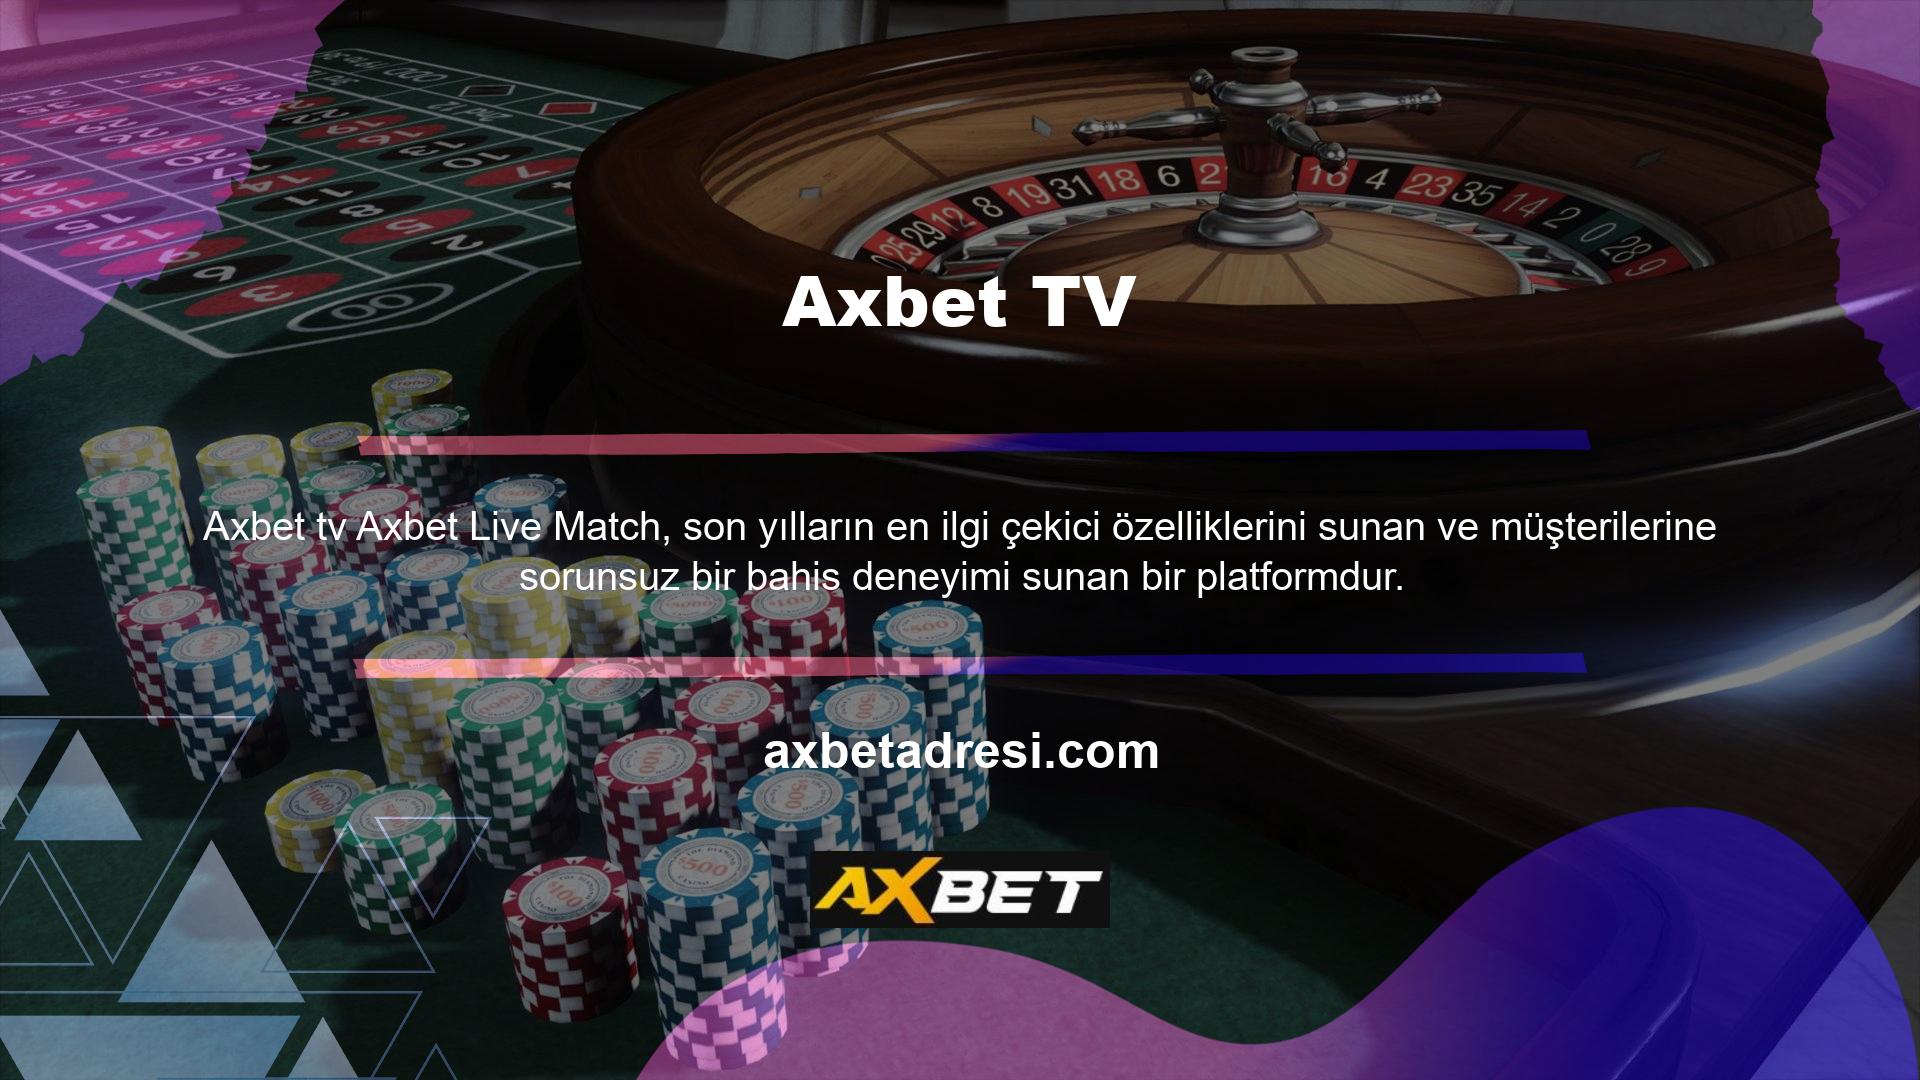 Axbet, resmi web sitesinde canlı spor, canlı casino ve diğer oyunlara erişim sunar